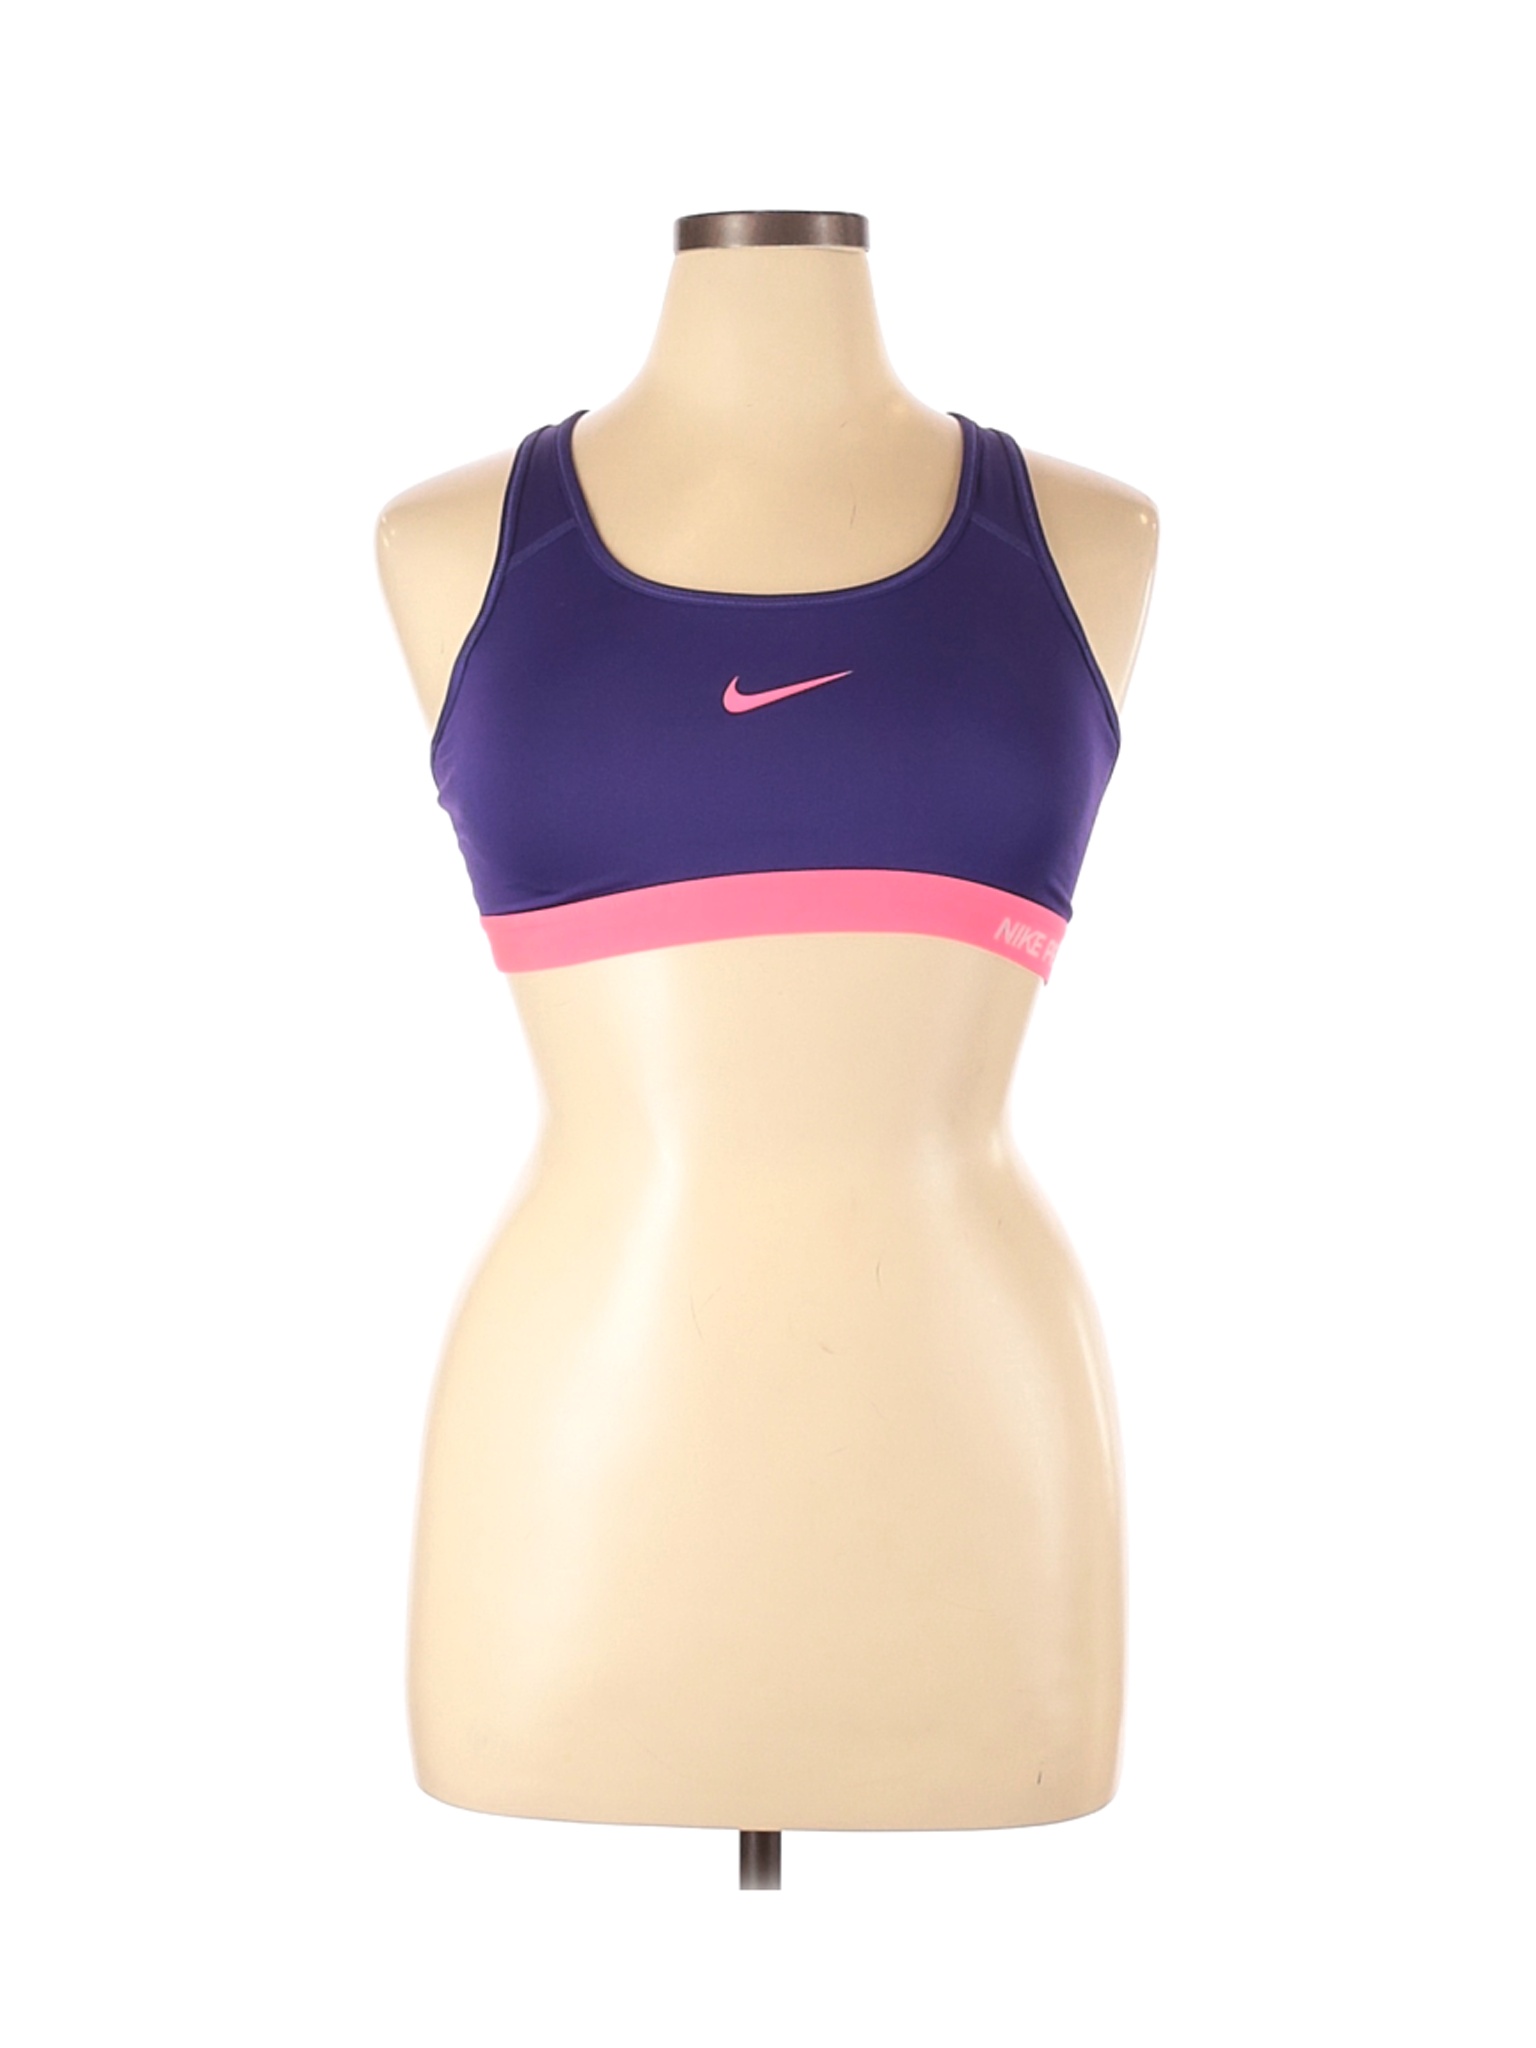 Nike Women Purple Sports Bra L | eBay